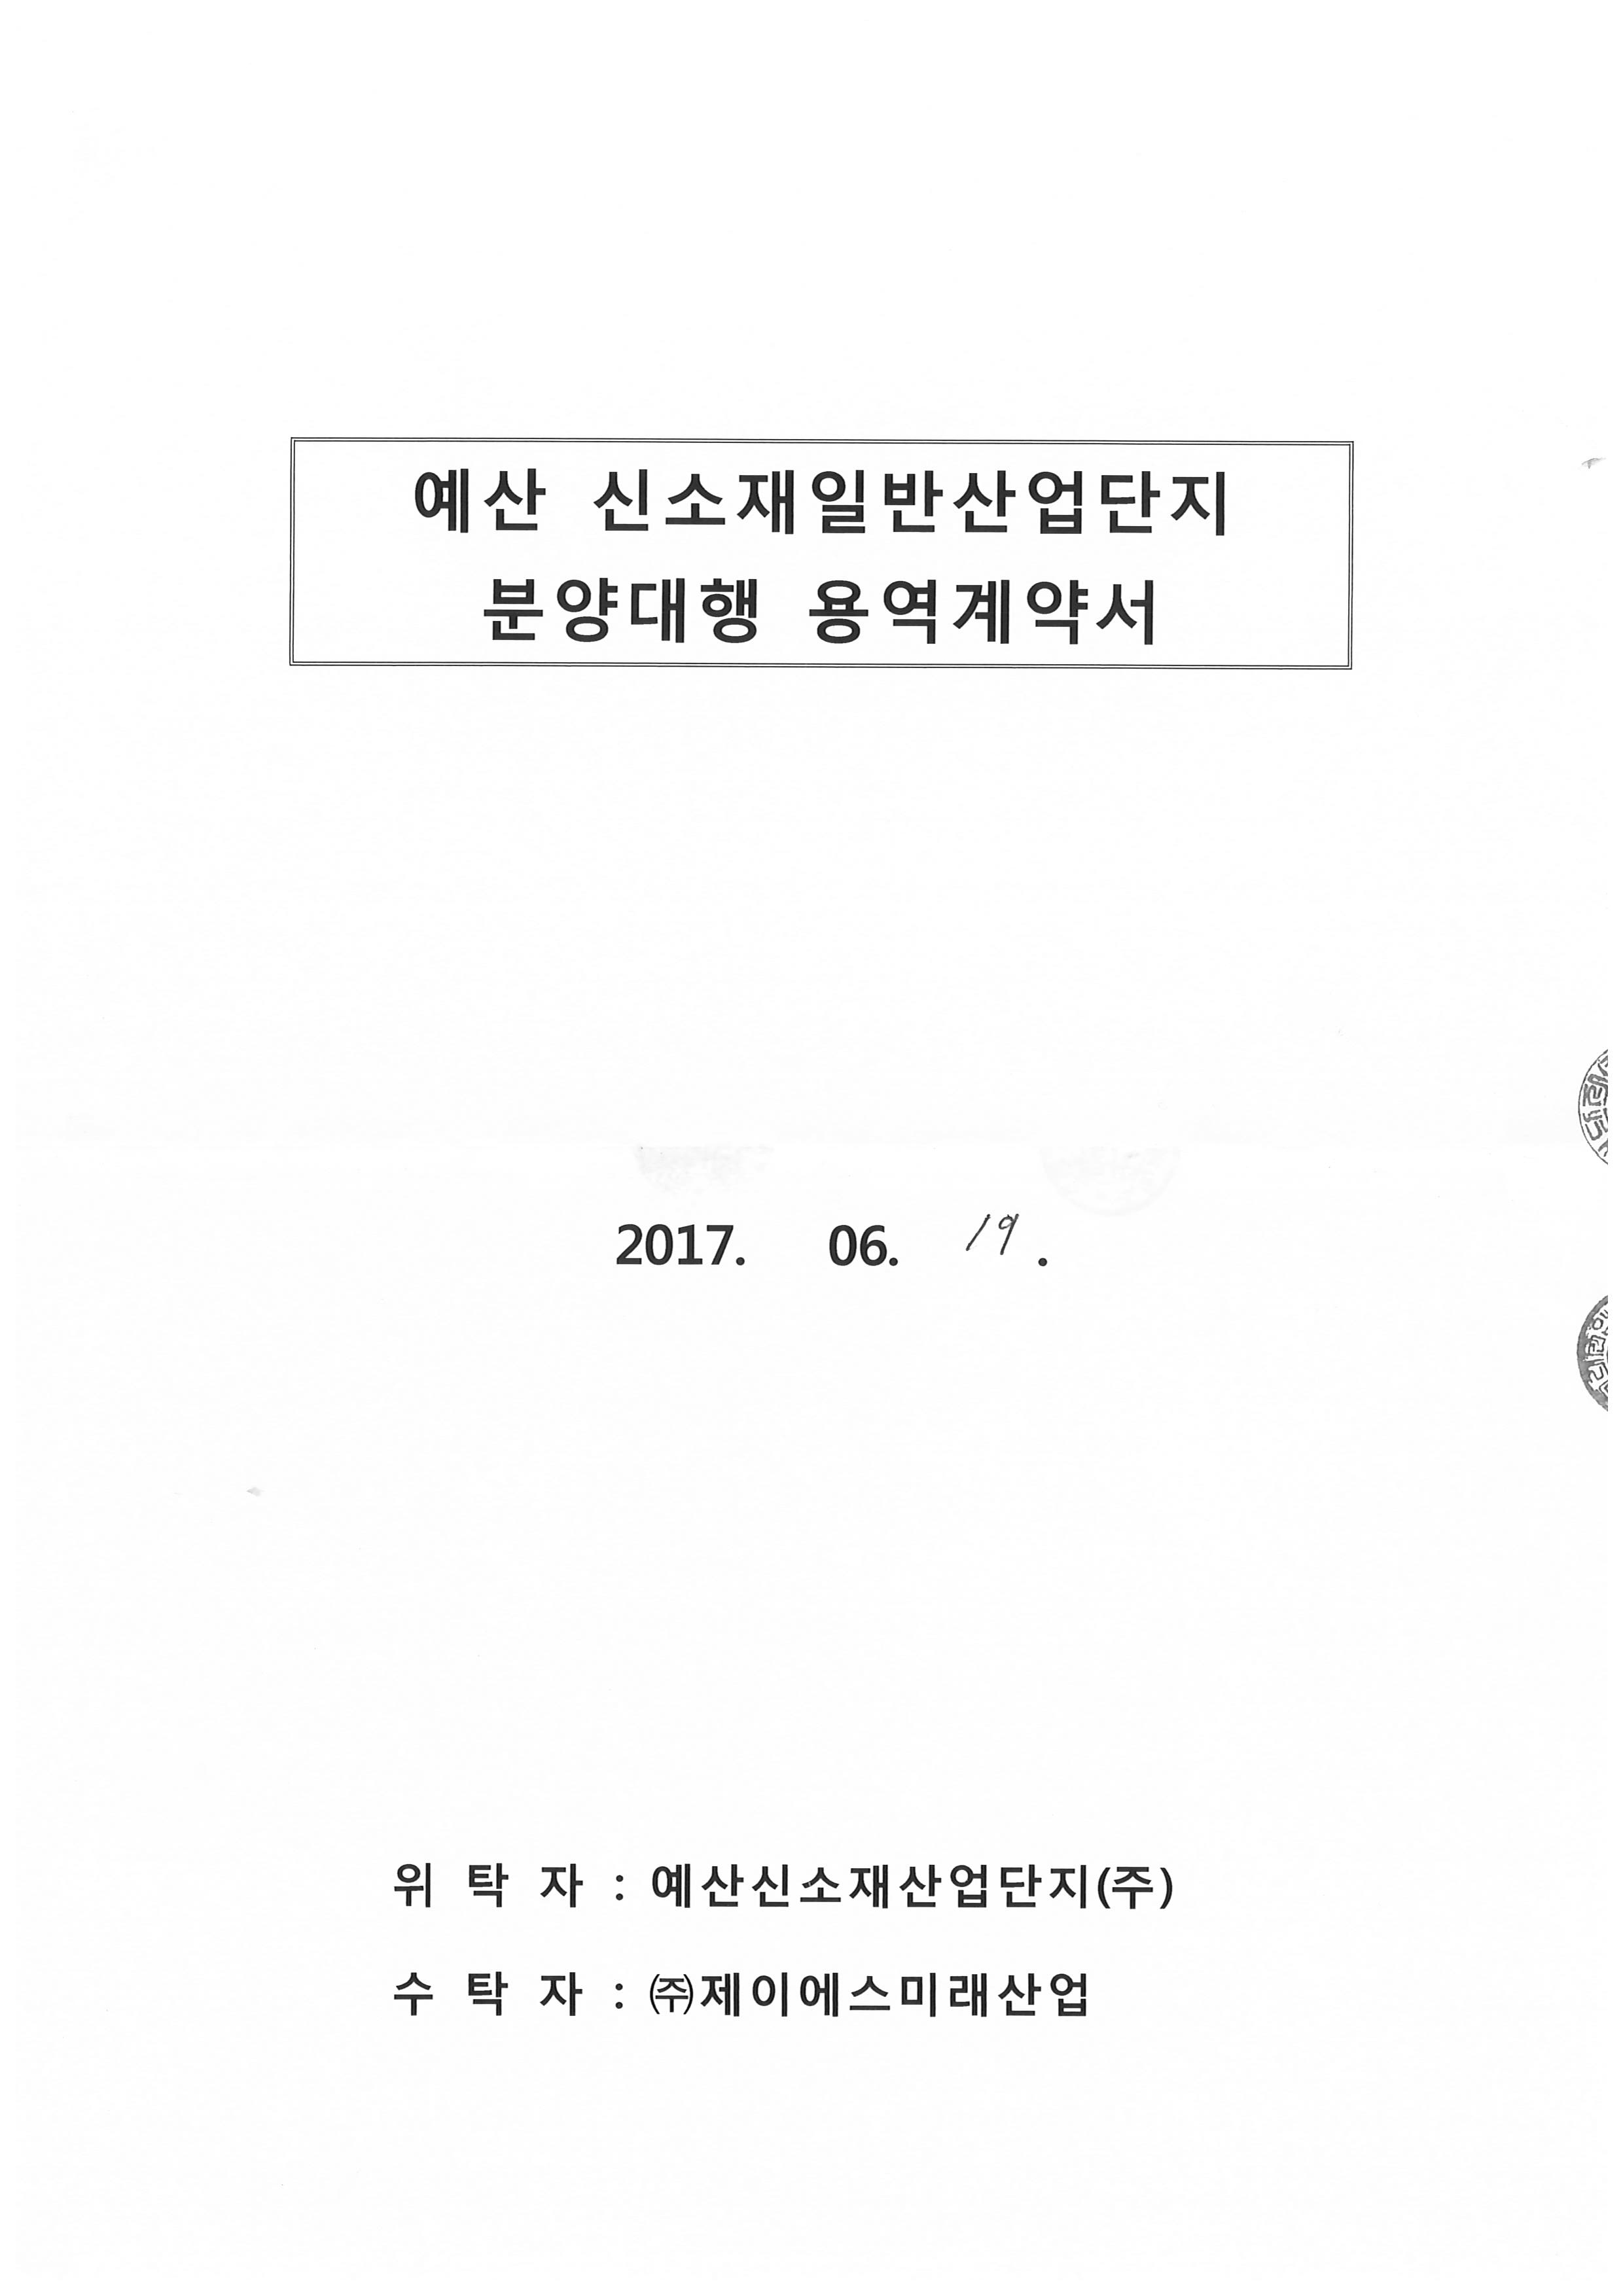 분양대행계약서_예산신소재산업단지_20170619(1).png